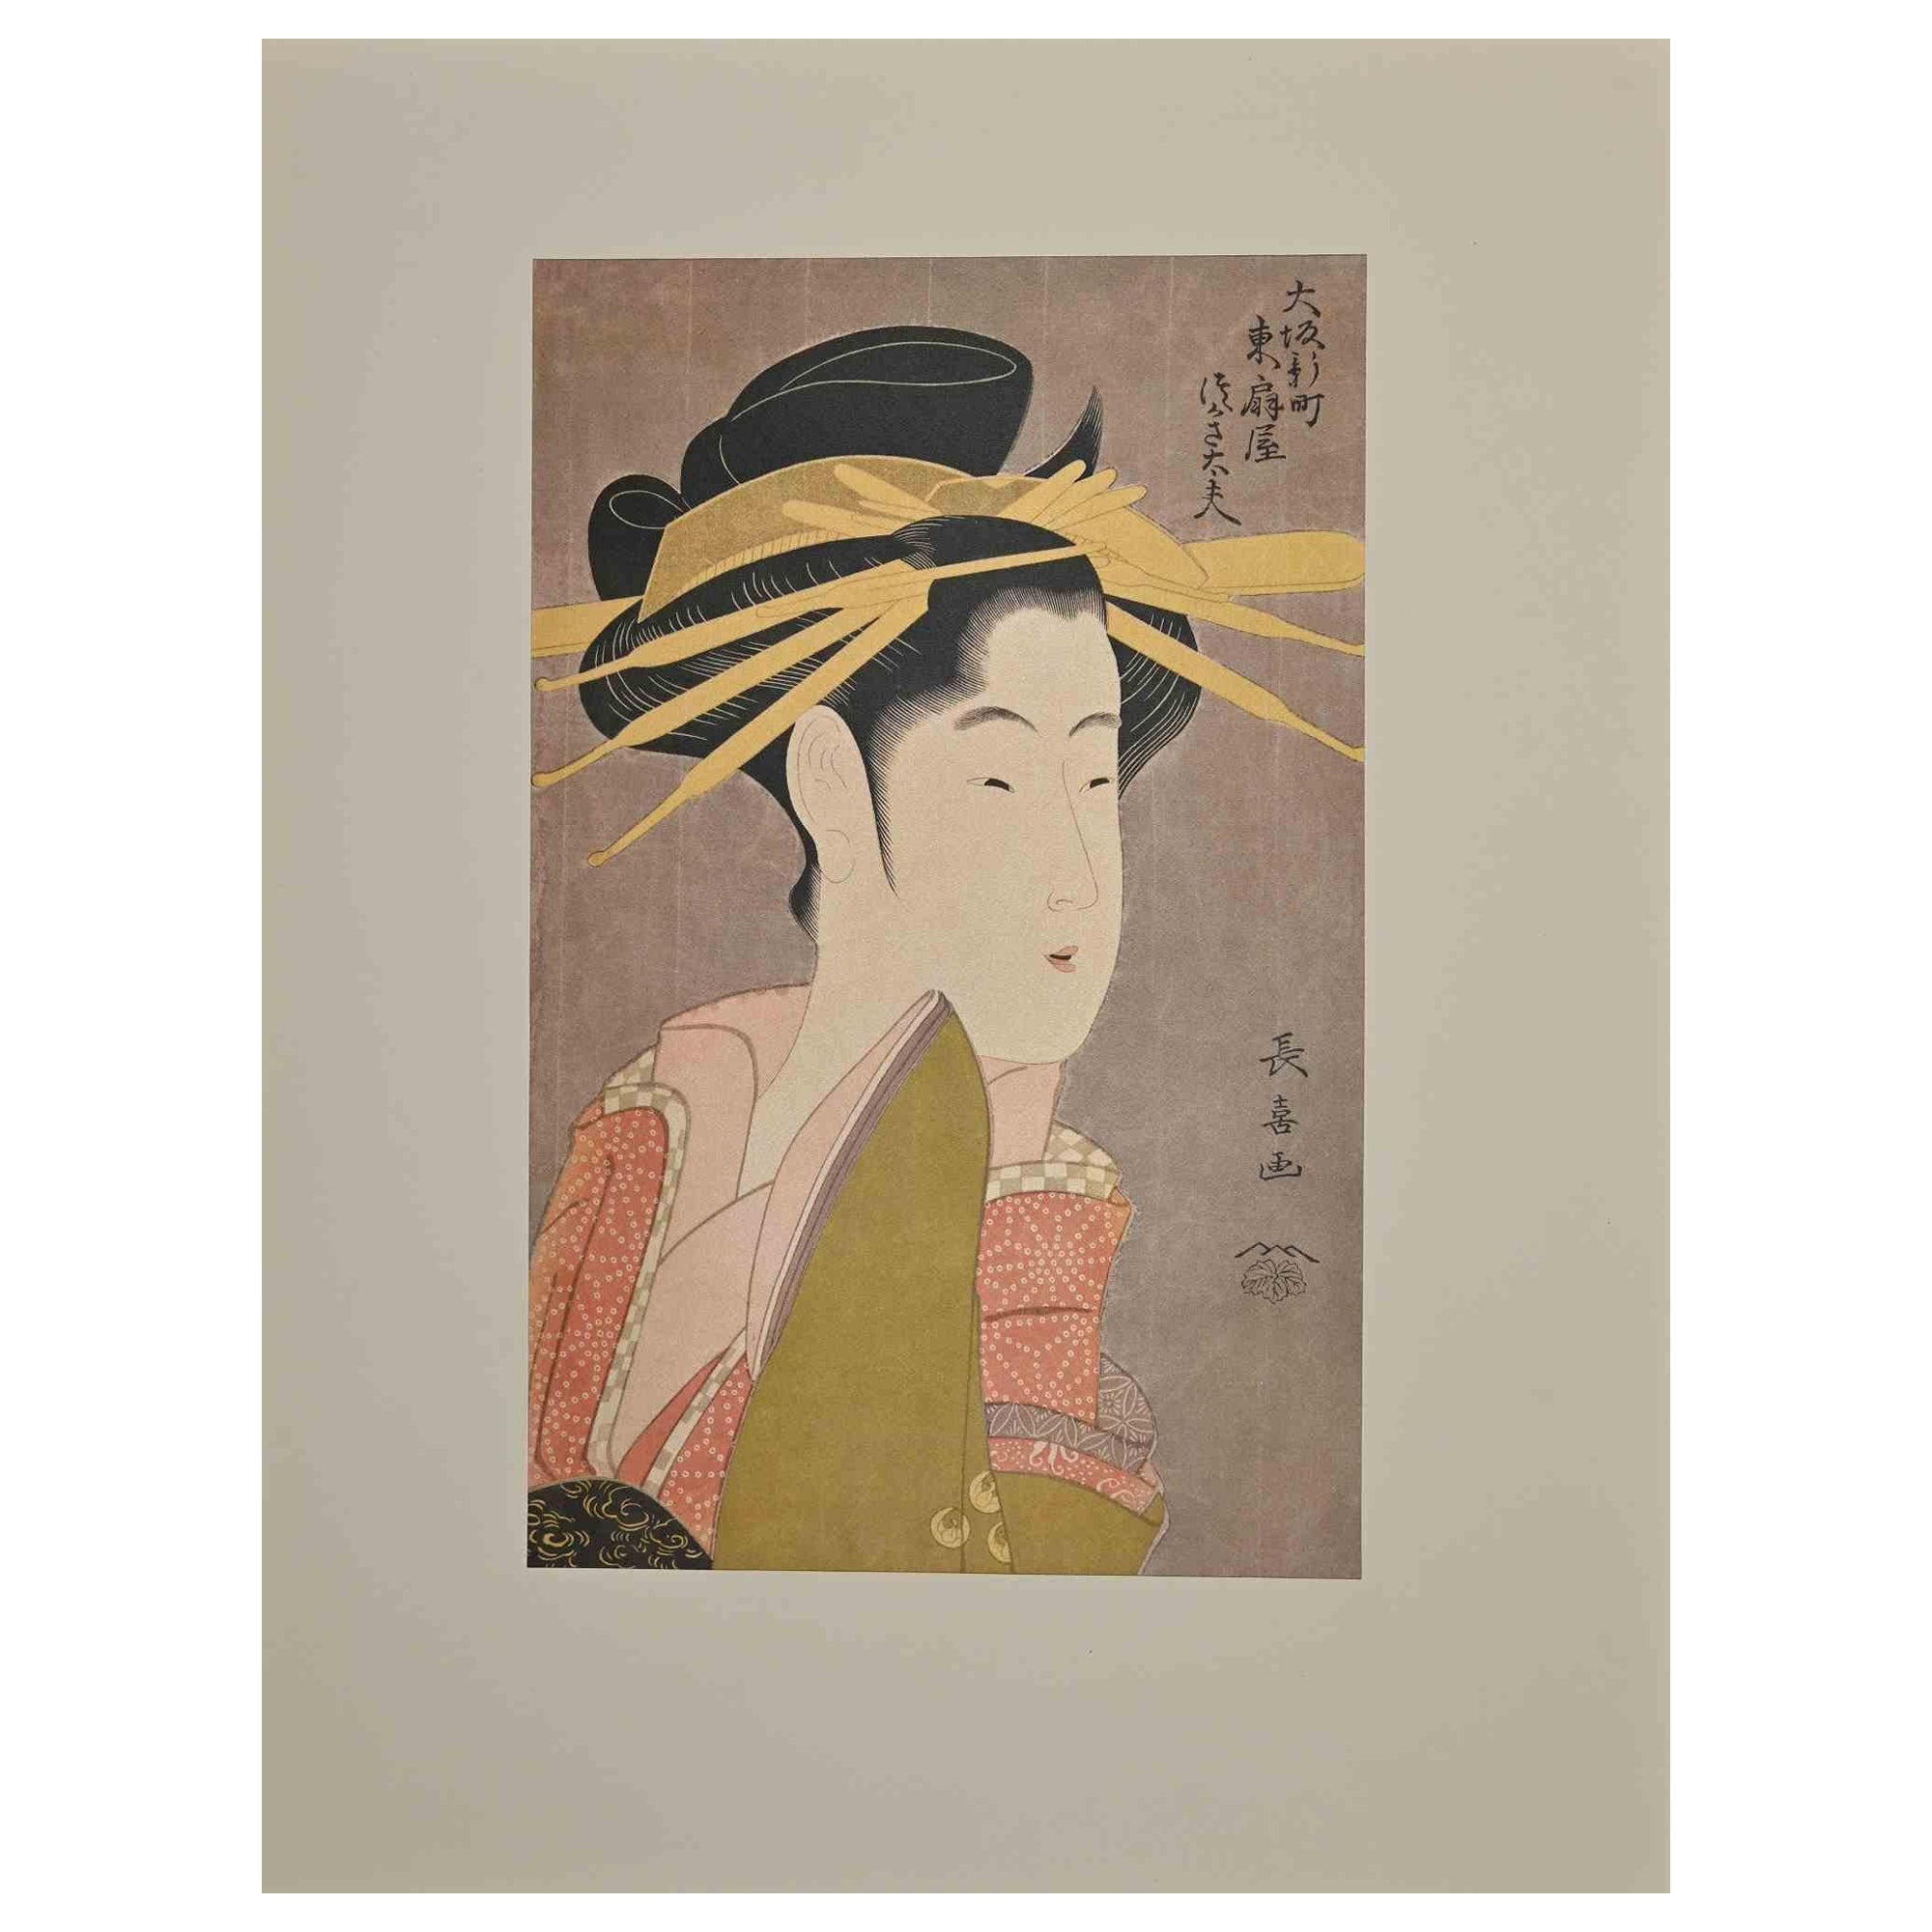 Shiratsuyu of the Wakanayai aus der Serie The Shinmachi Quarter of Osaka (Ôsaka Shinmachi) ist ein Druck, der in der Mitte des 20. Jahrhunderts nach dem berühmten Holzschnitt von Chokosai Eisho (Japan, Edo-Periode, 1700 n. Chr.) entstand.

Siebdruck